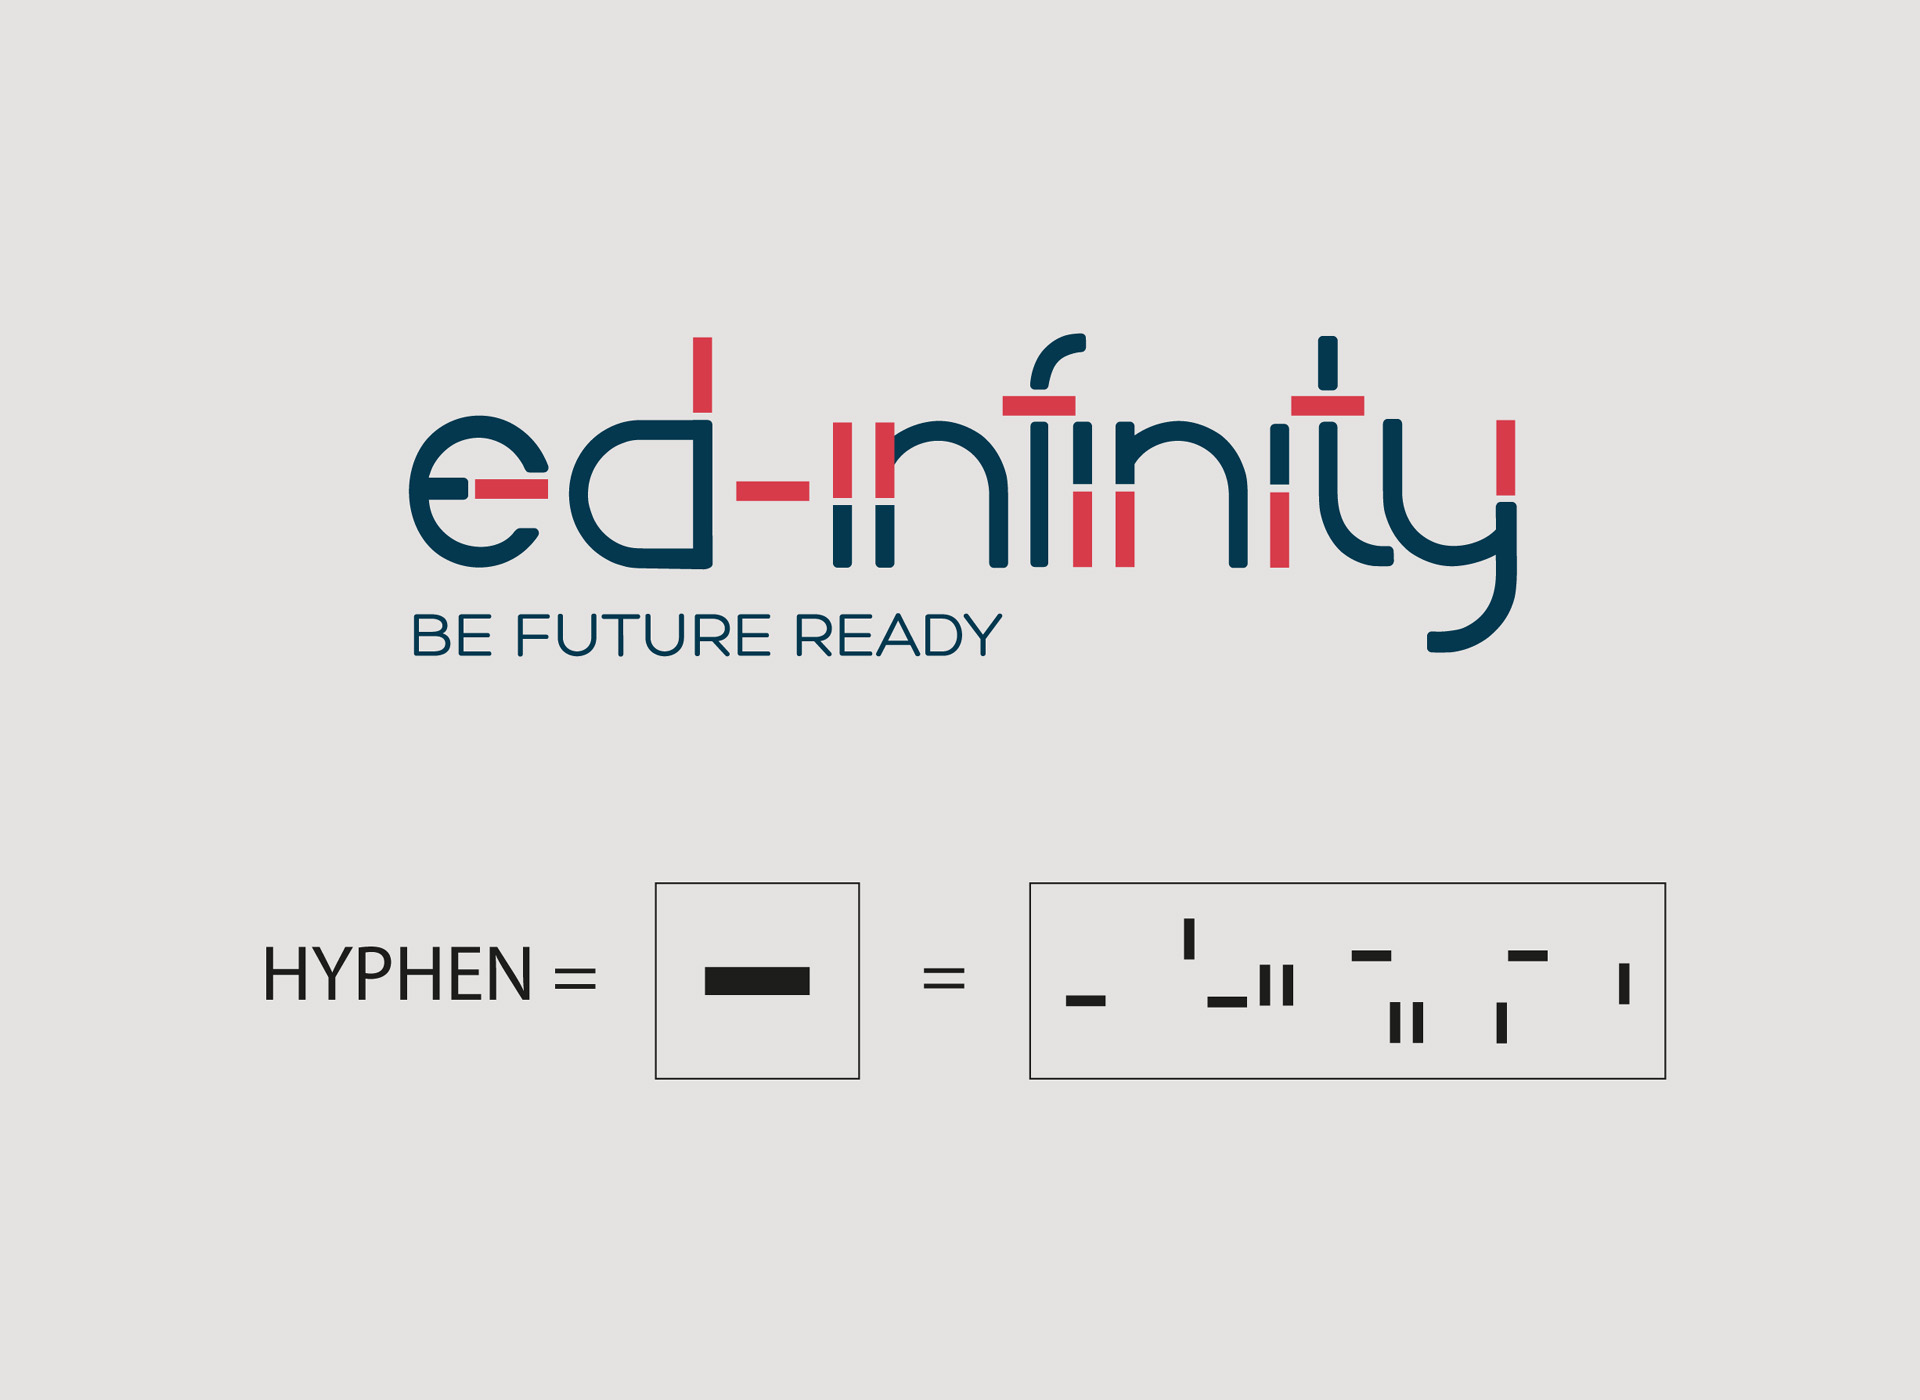 Ed-Infinity